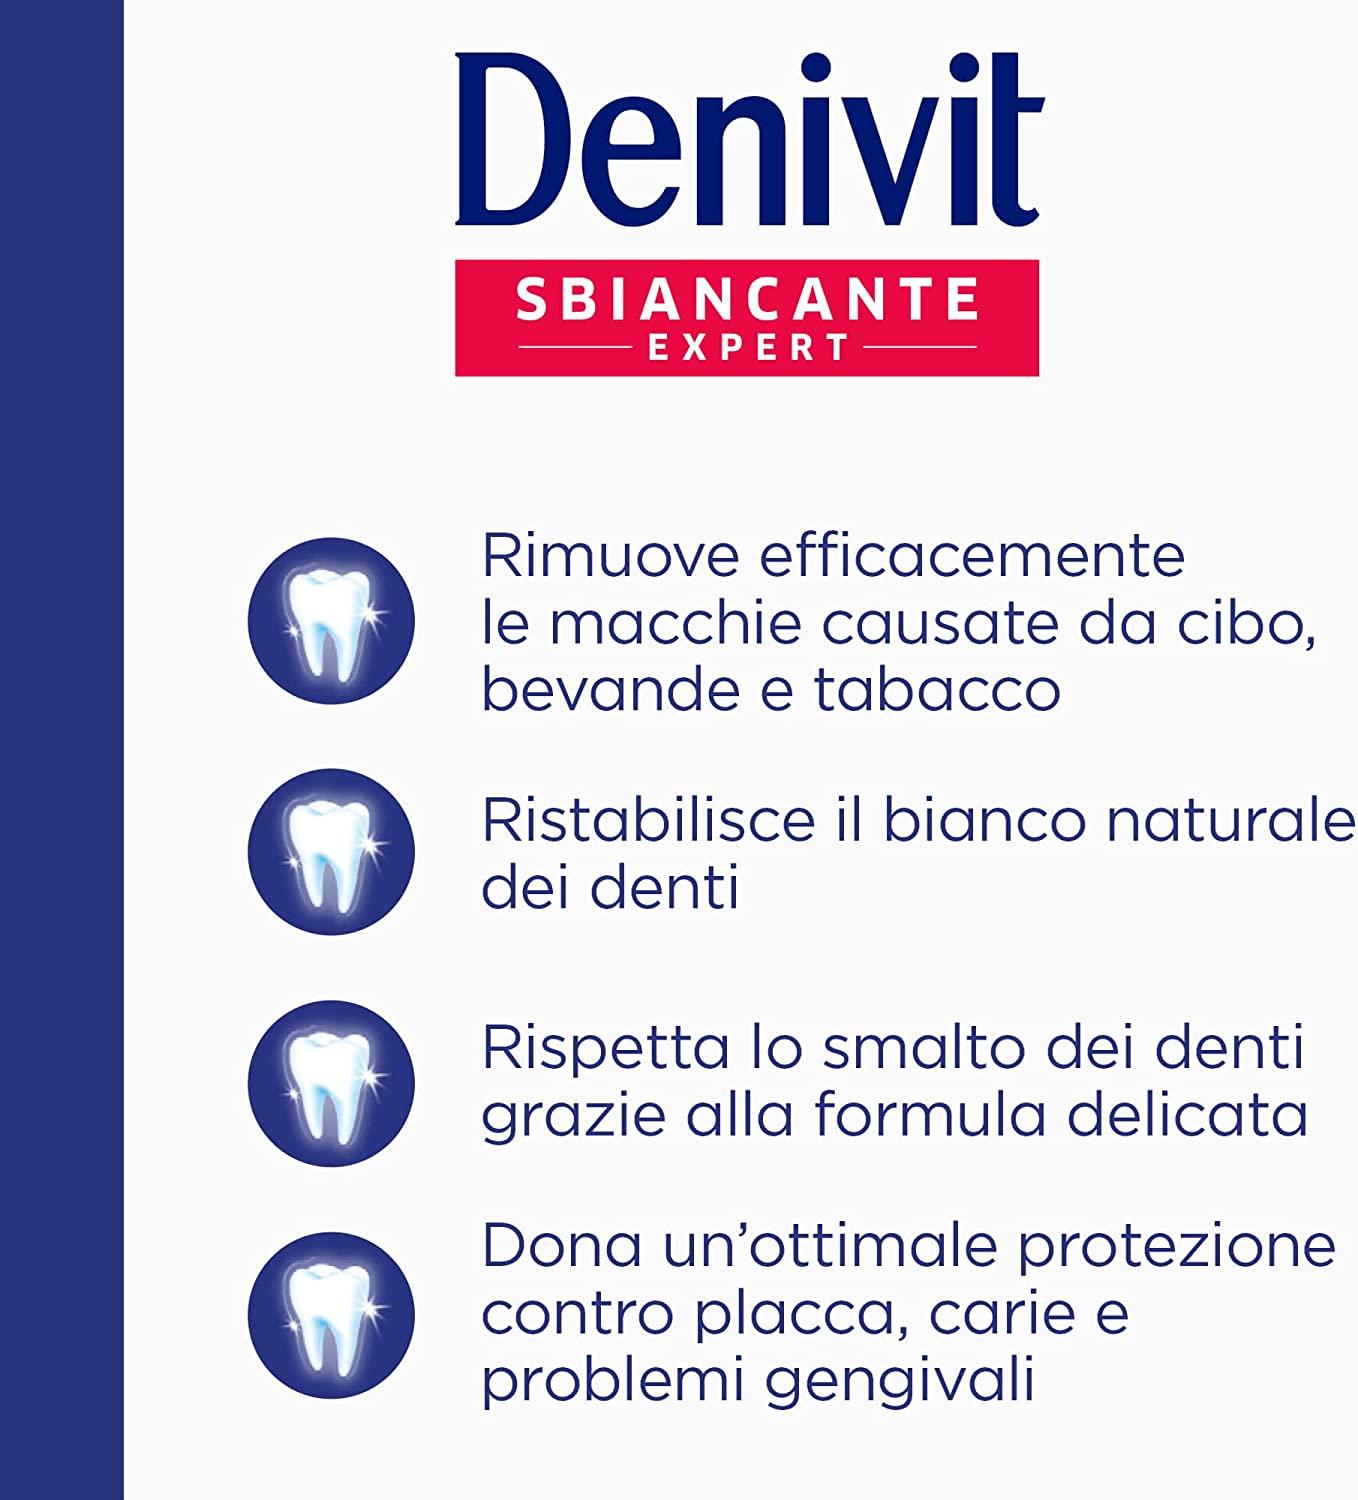 Denivit Dentifricio Antimacchia Intenso Sbiancante Expert Dentifricio Rimuove le Macchie 50 ml